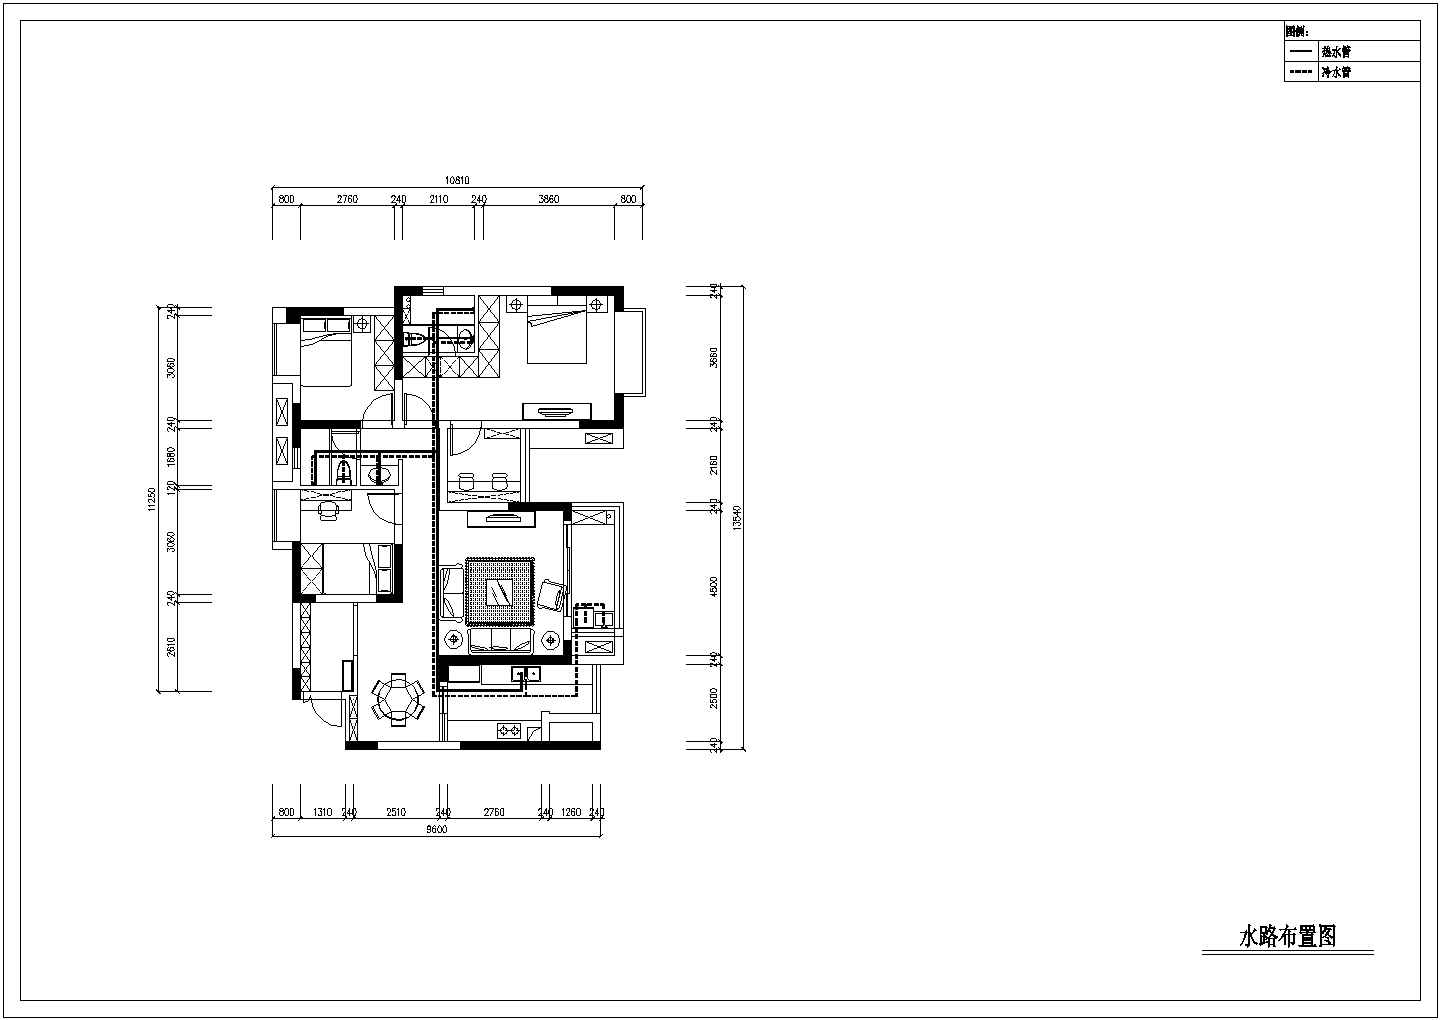 【重庆】中交丽景现代美式三室两厅装修设计施工图